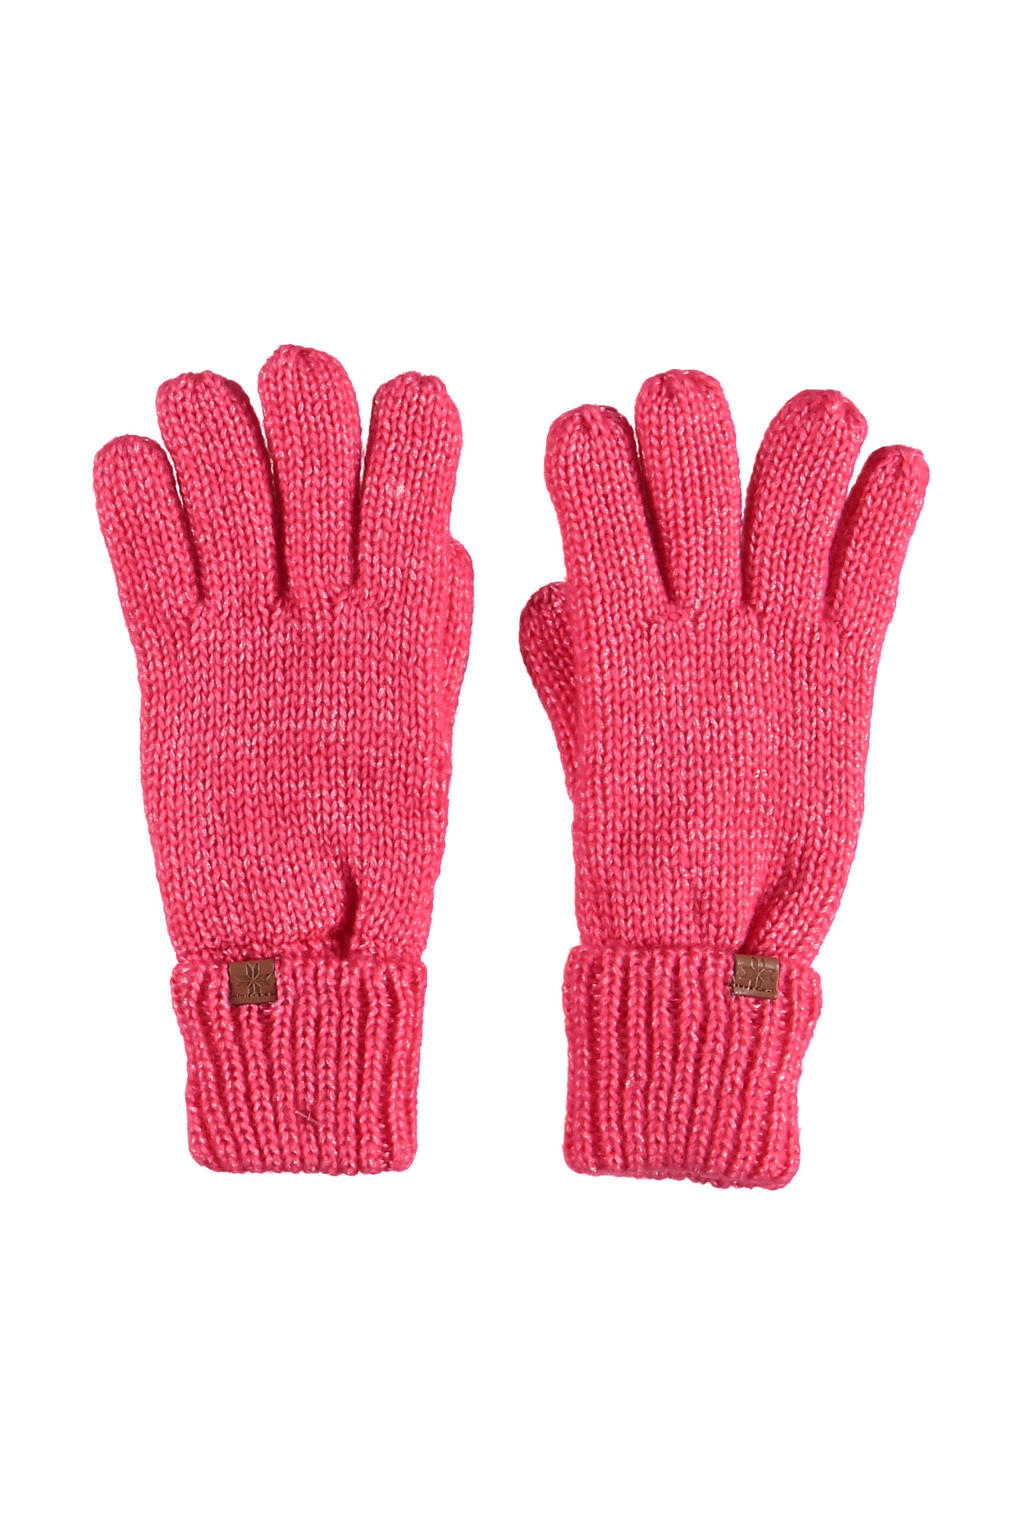 Sarlini handschoenen gemeleerd roze